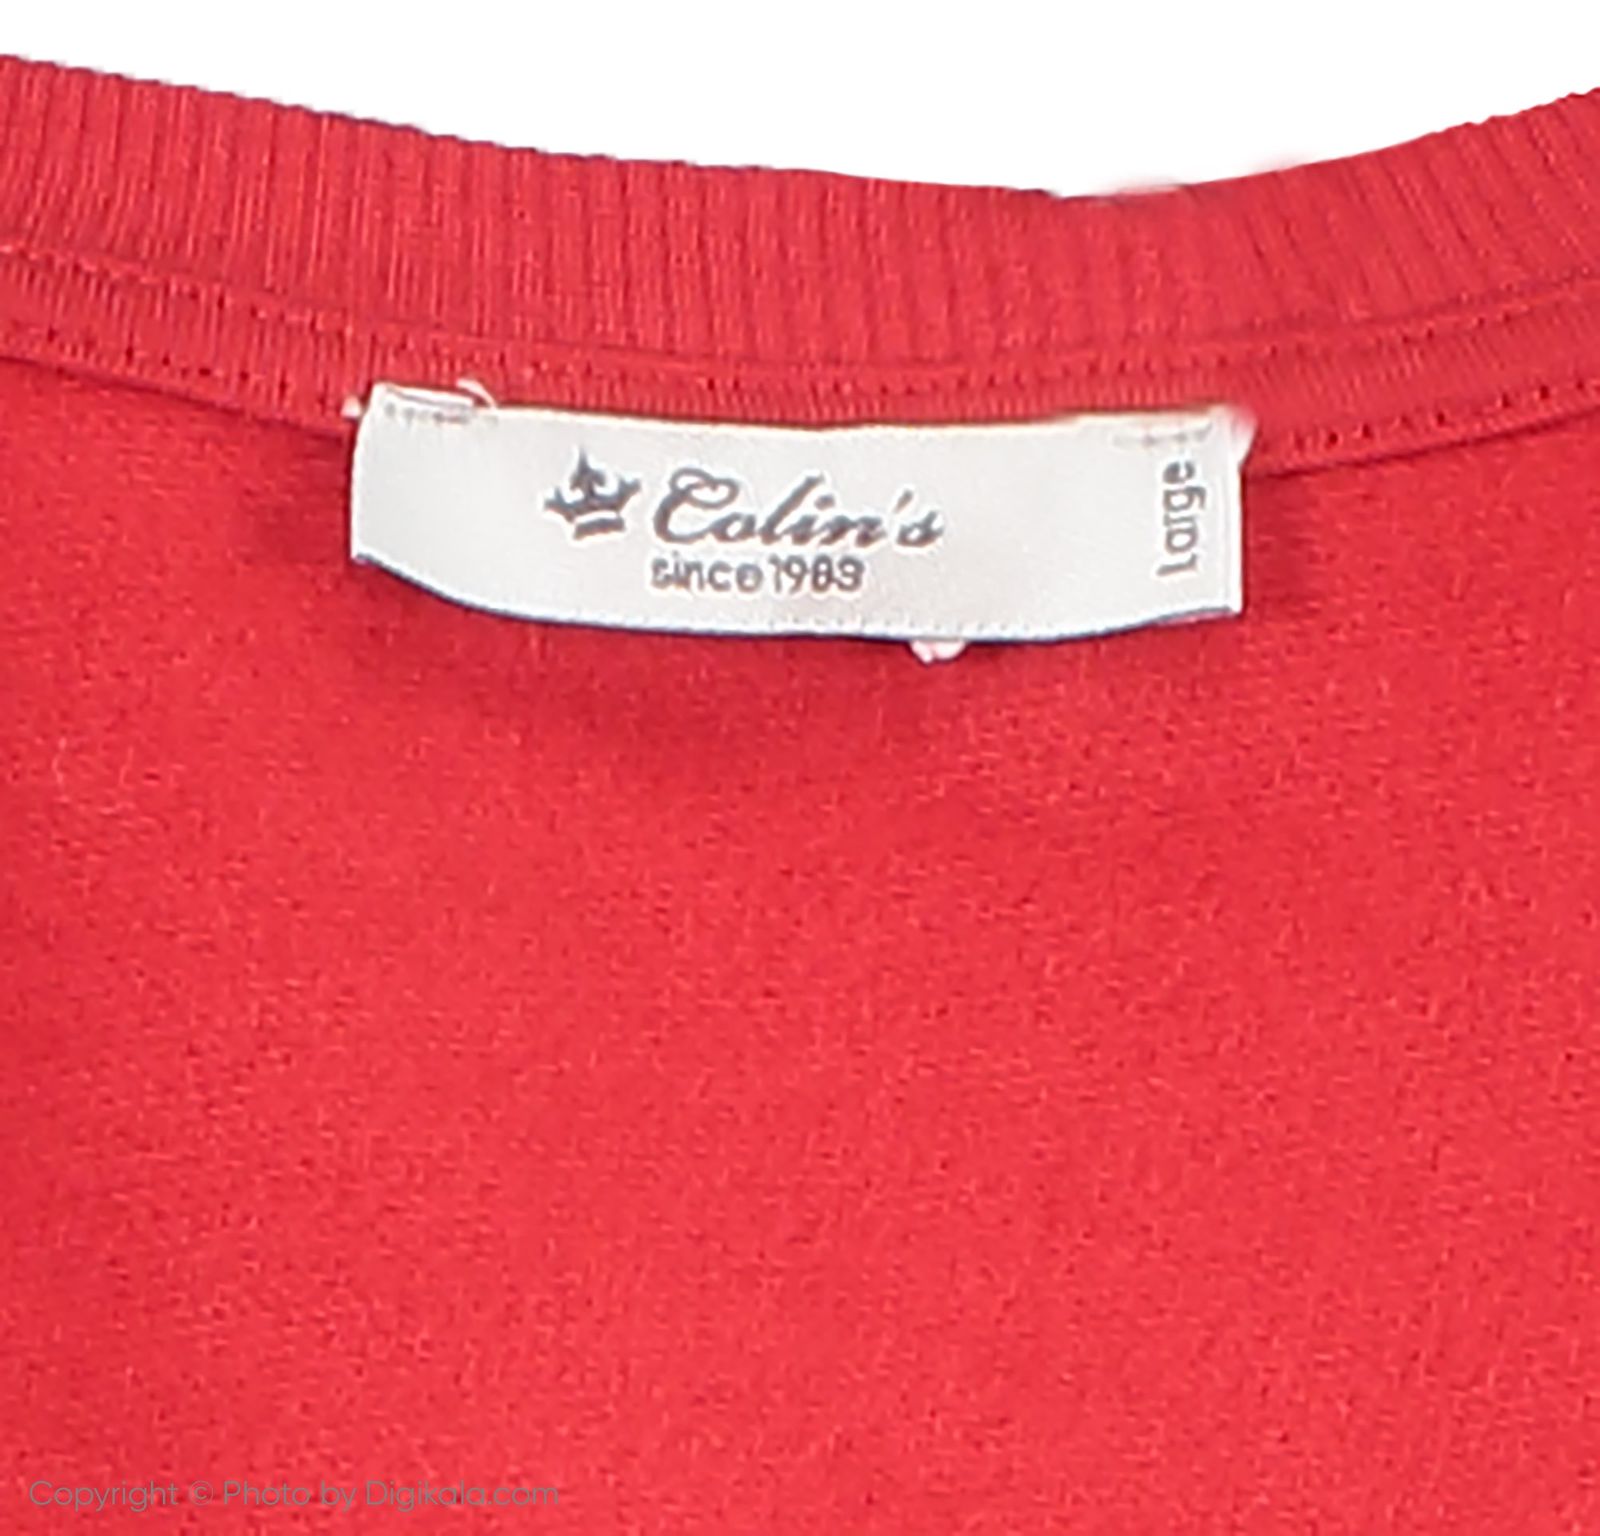 سویشرت زنانه کالینز مدل CL1035579-RED - قرمز - 5